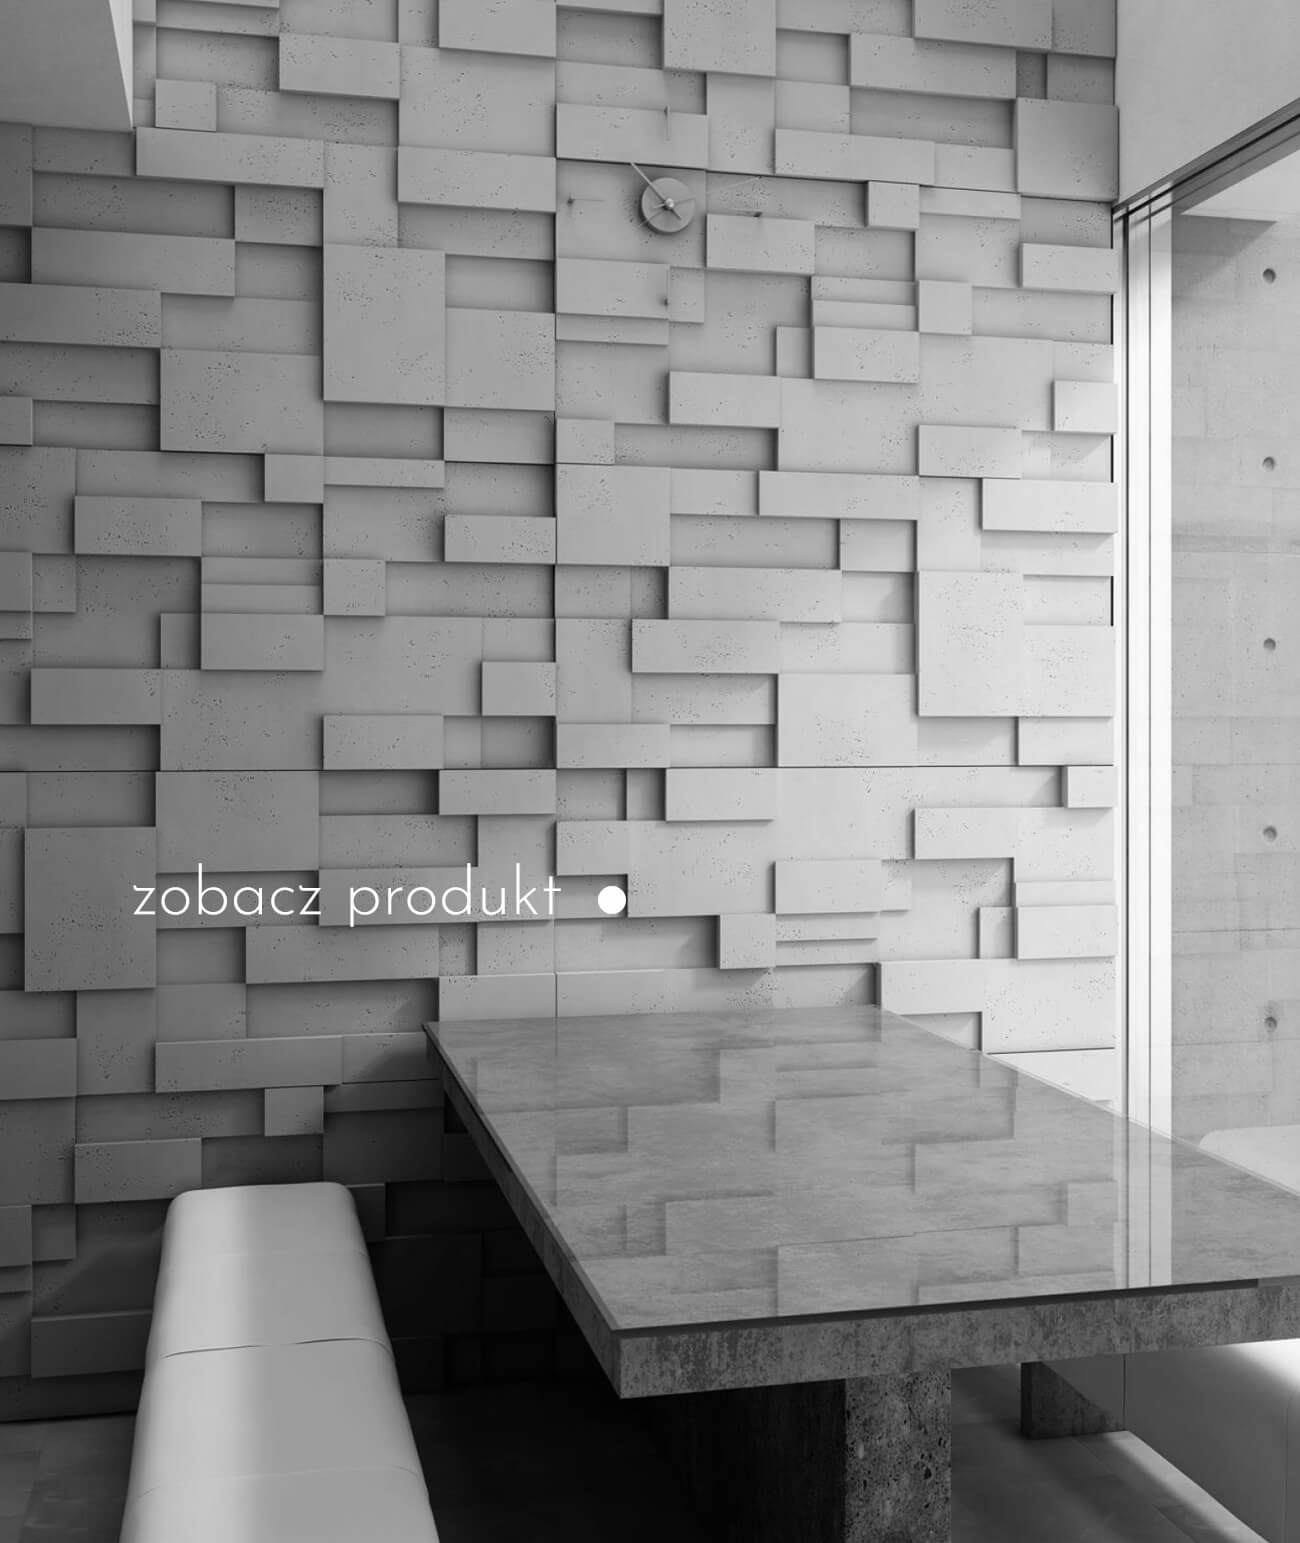 panele-betonowe-3d-scienne-i-elewacyjne-beton-architektoniczny_440-2401-pb11-s51-ciemno-szary-mysi-cub---panel-dekor-3d-beton-architektoniczny-panel-scienny